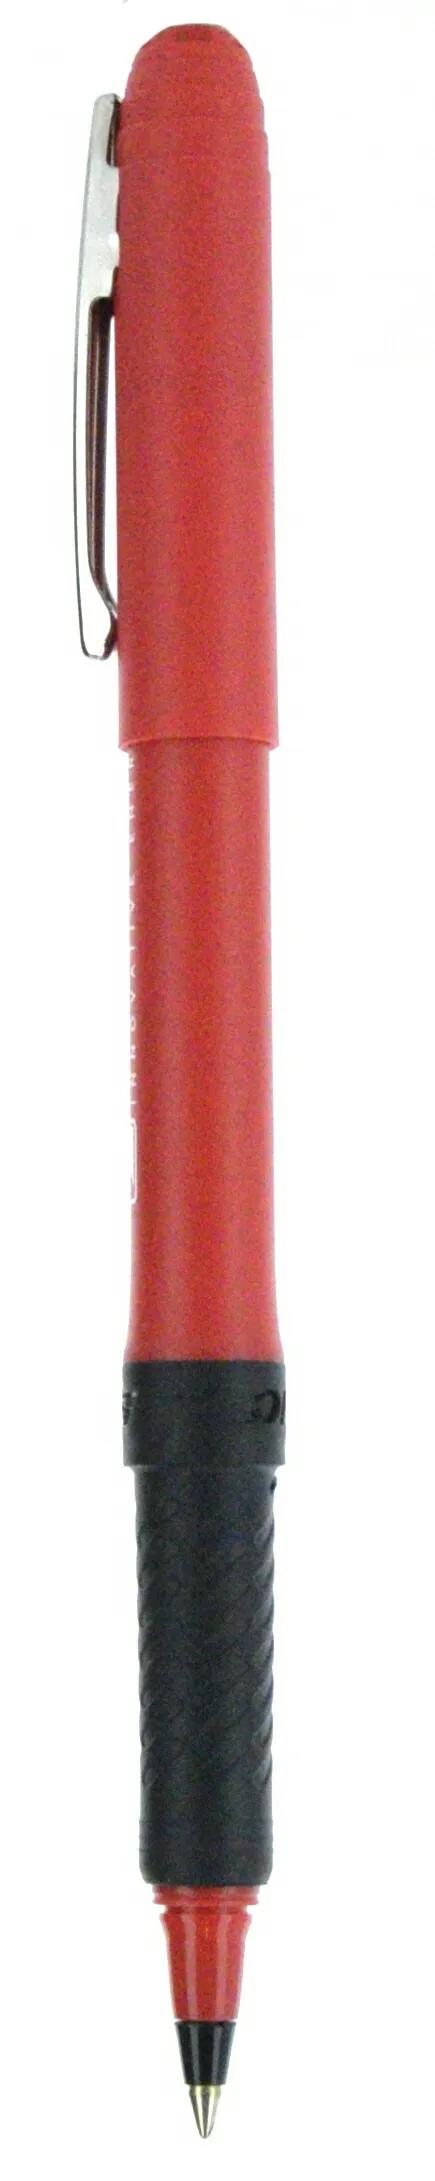 BIC® Grip Roller Pen 81 of 147